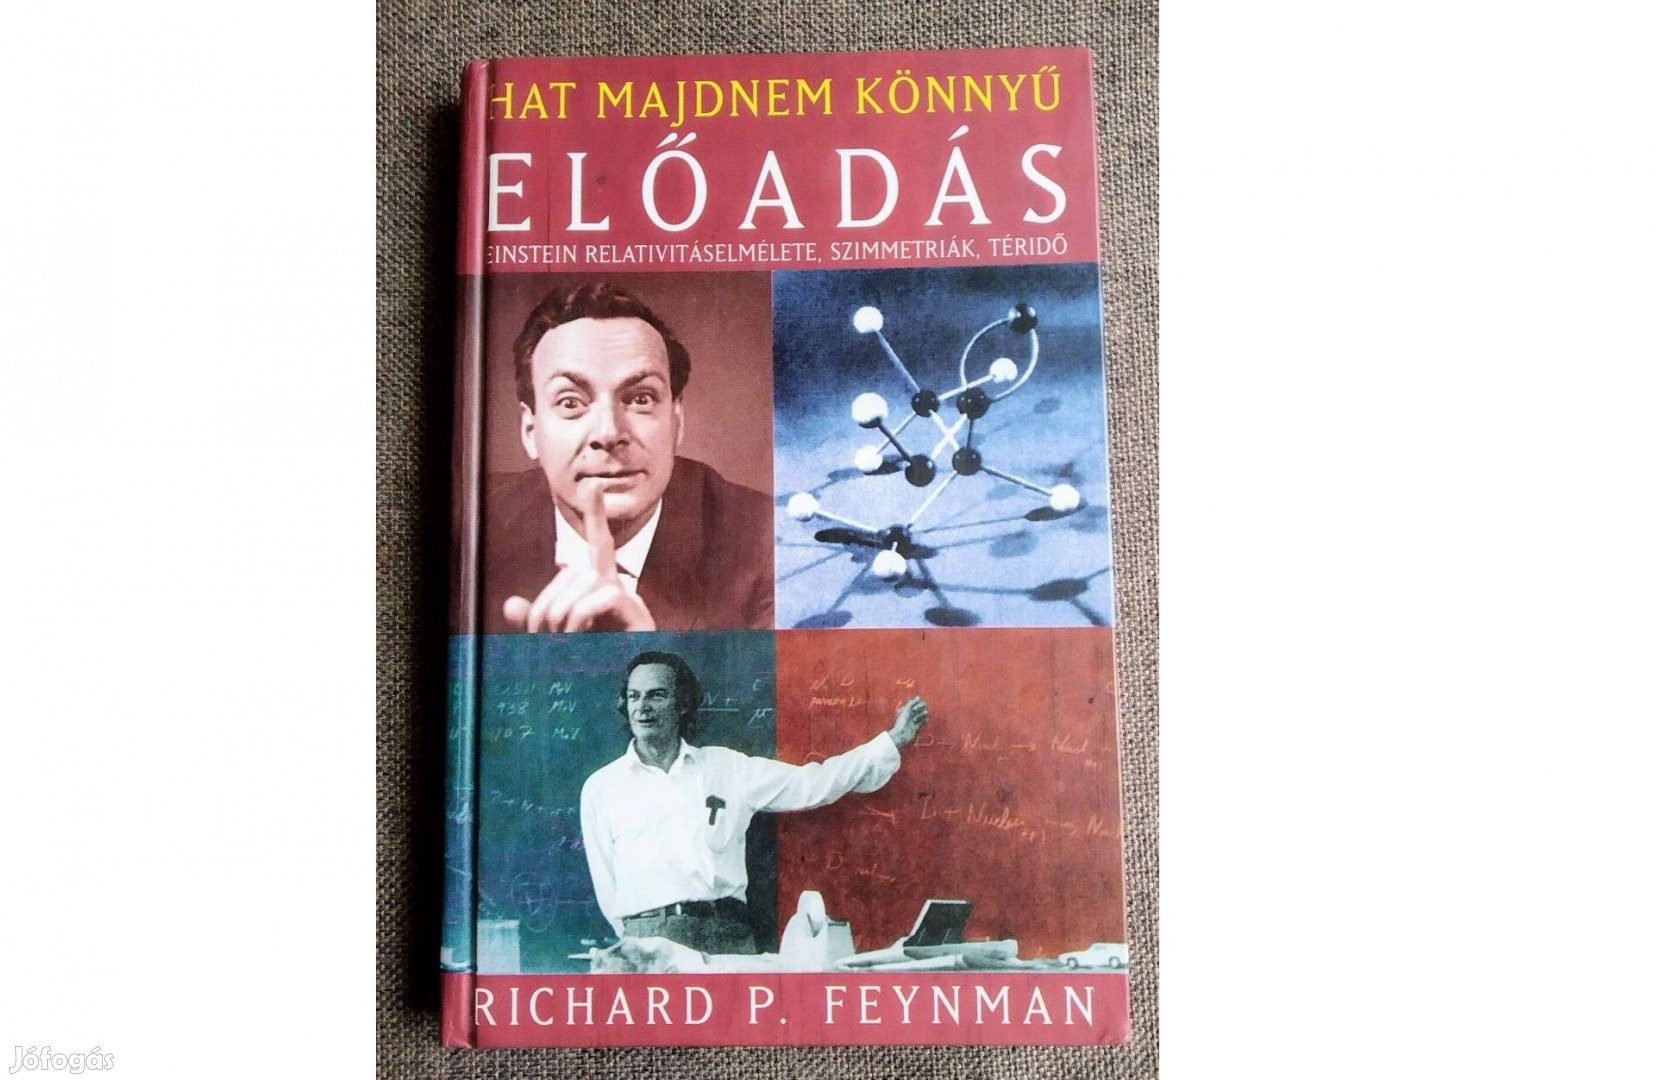 Hat majdnem könnyű előadás Richard P. Feynman